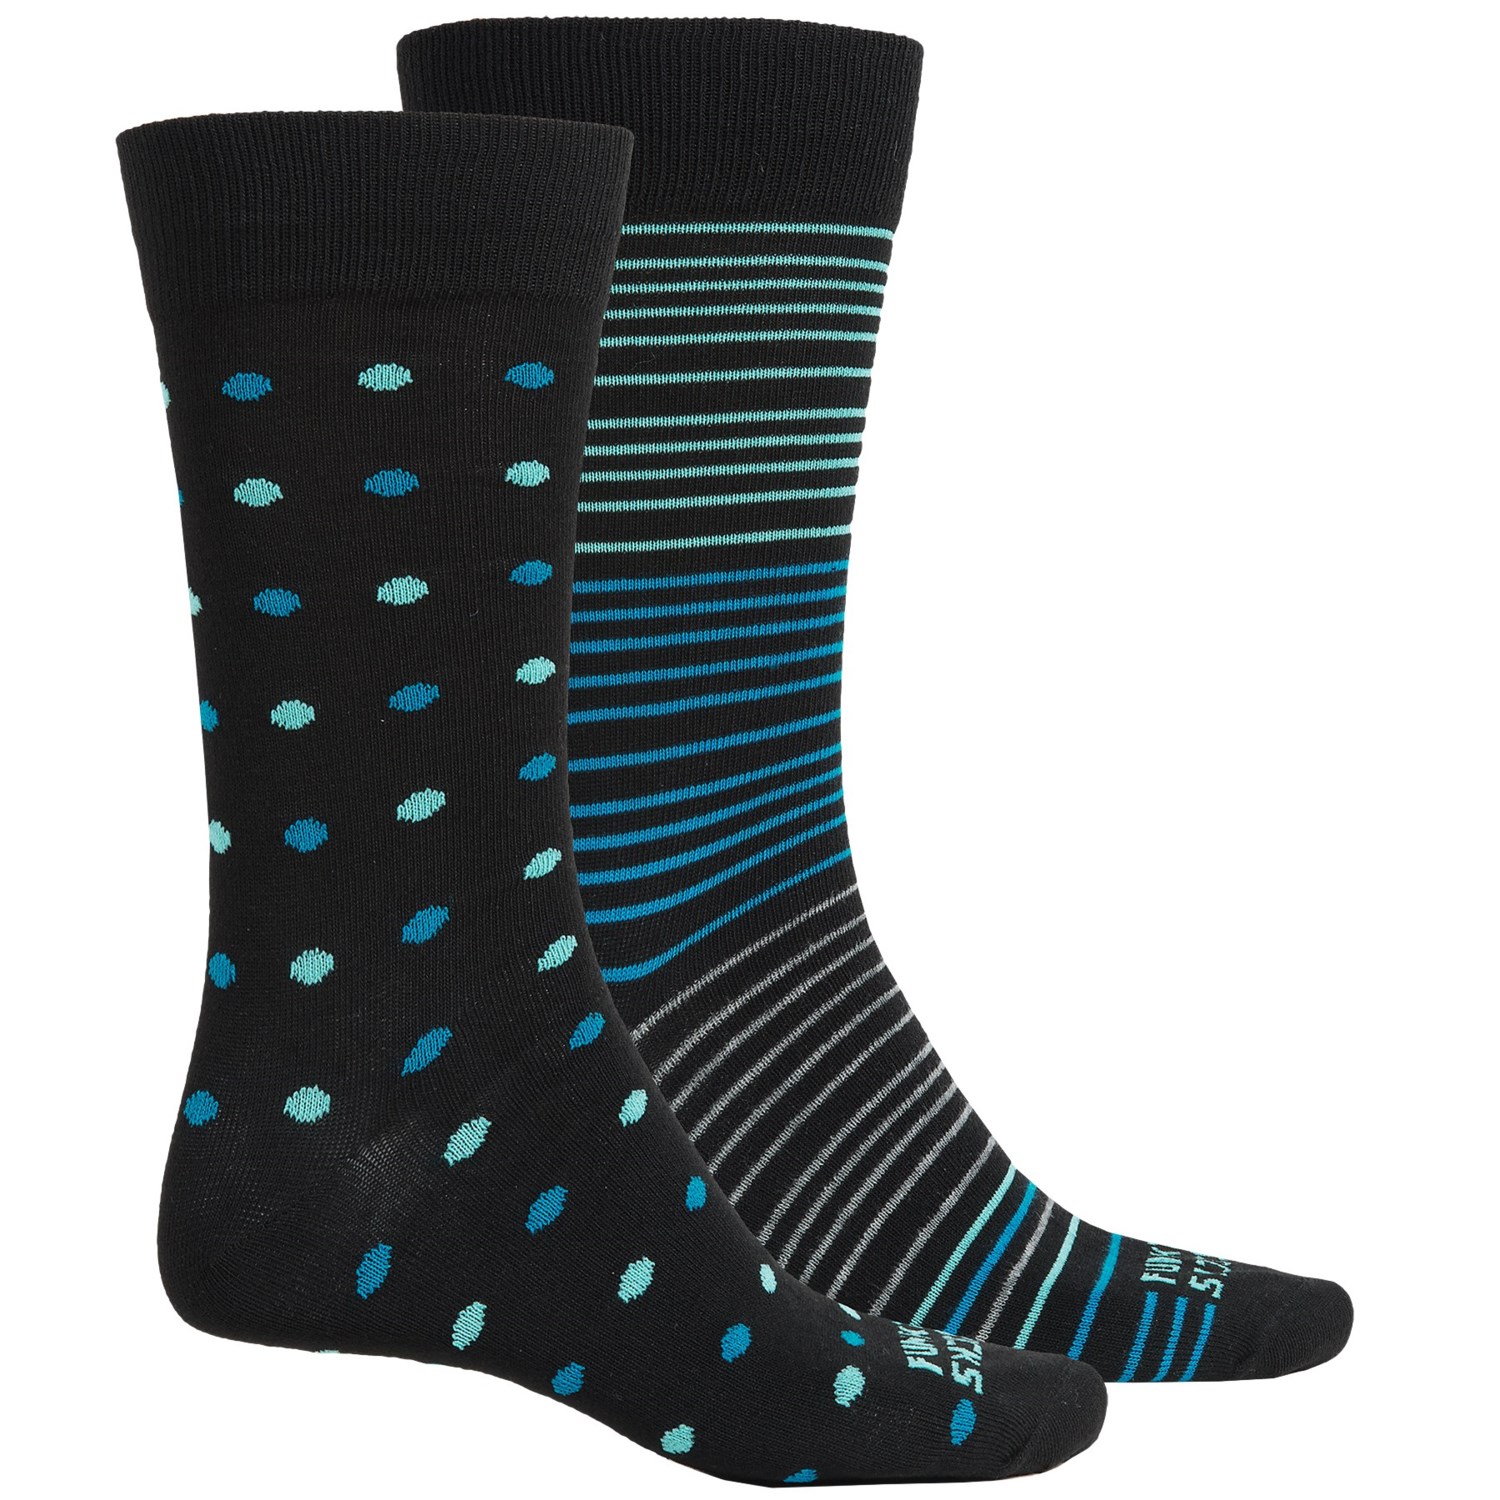 Funky Socks Light Socks – 2-Pack, Crew (For Men)